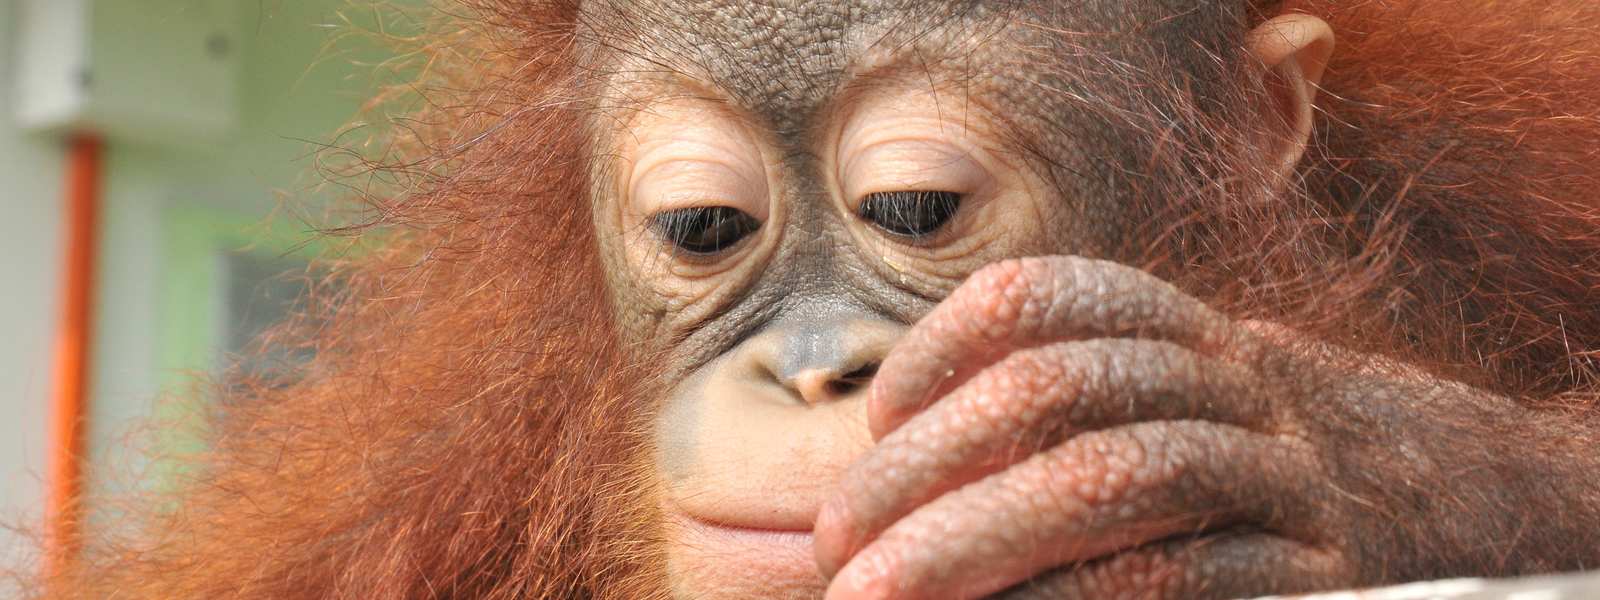 Orangutan, Koko